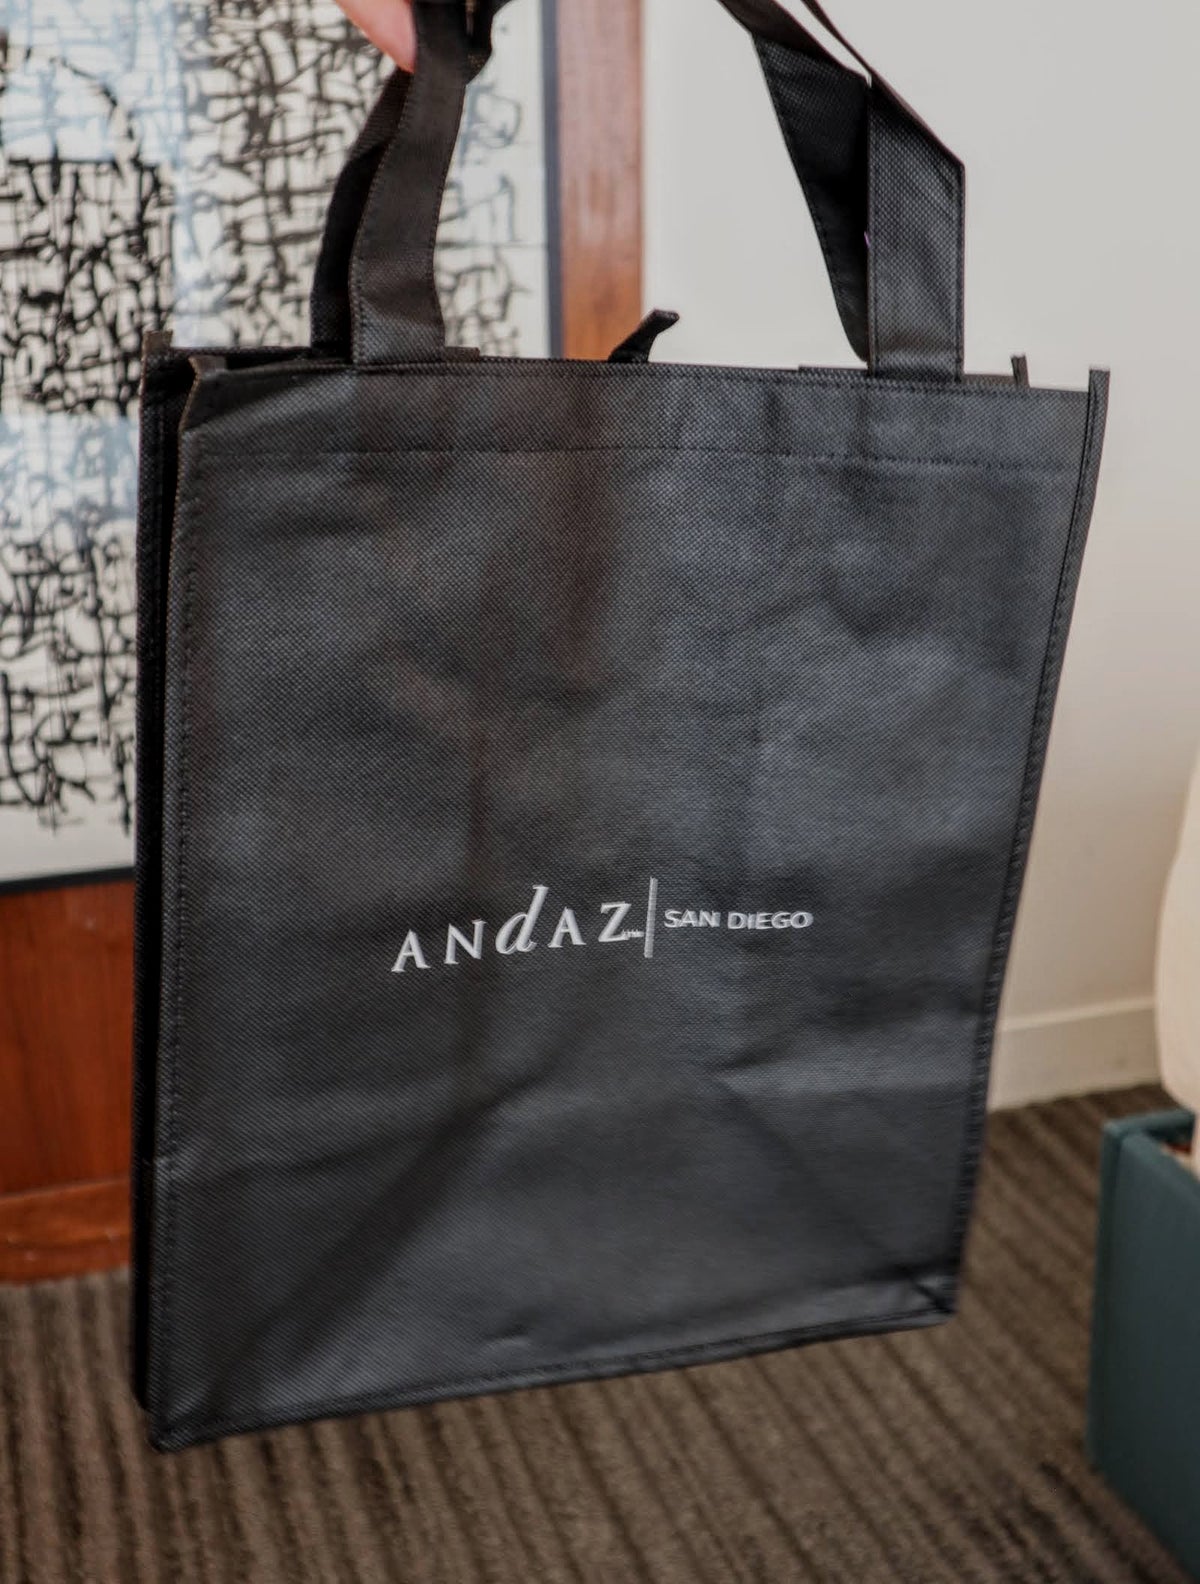 Andaz San Diego reusable tote bag